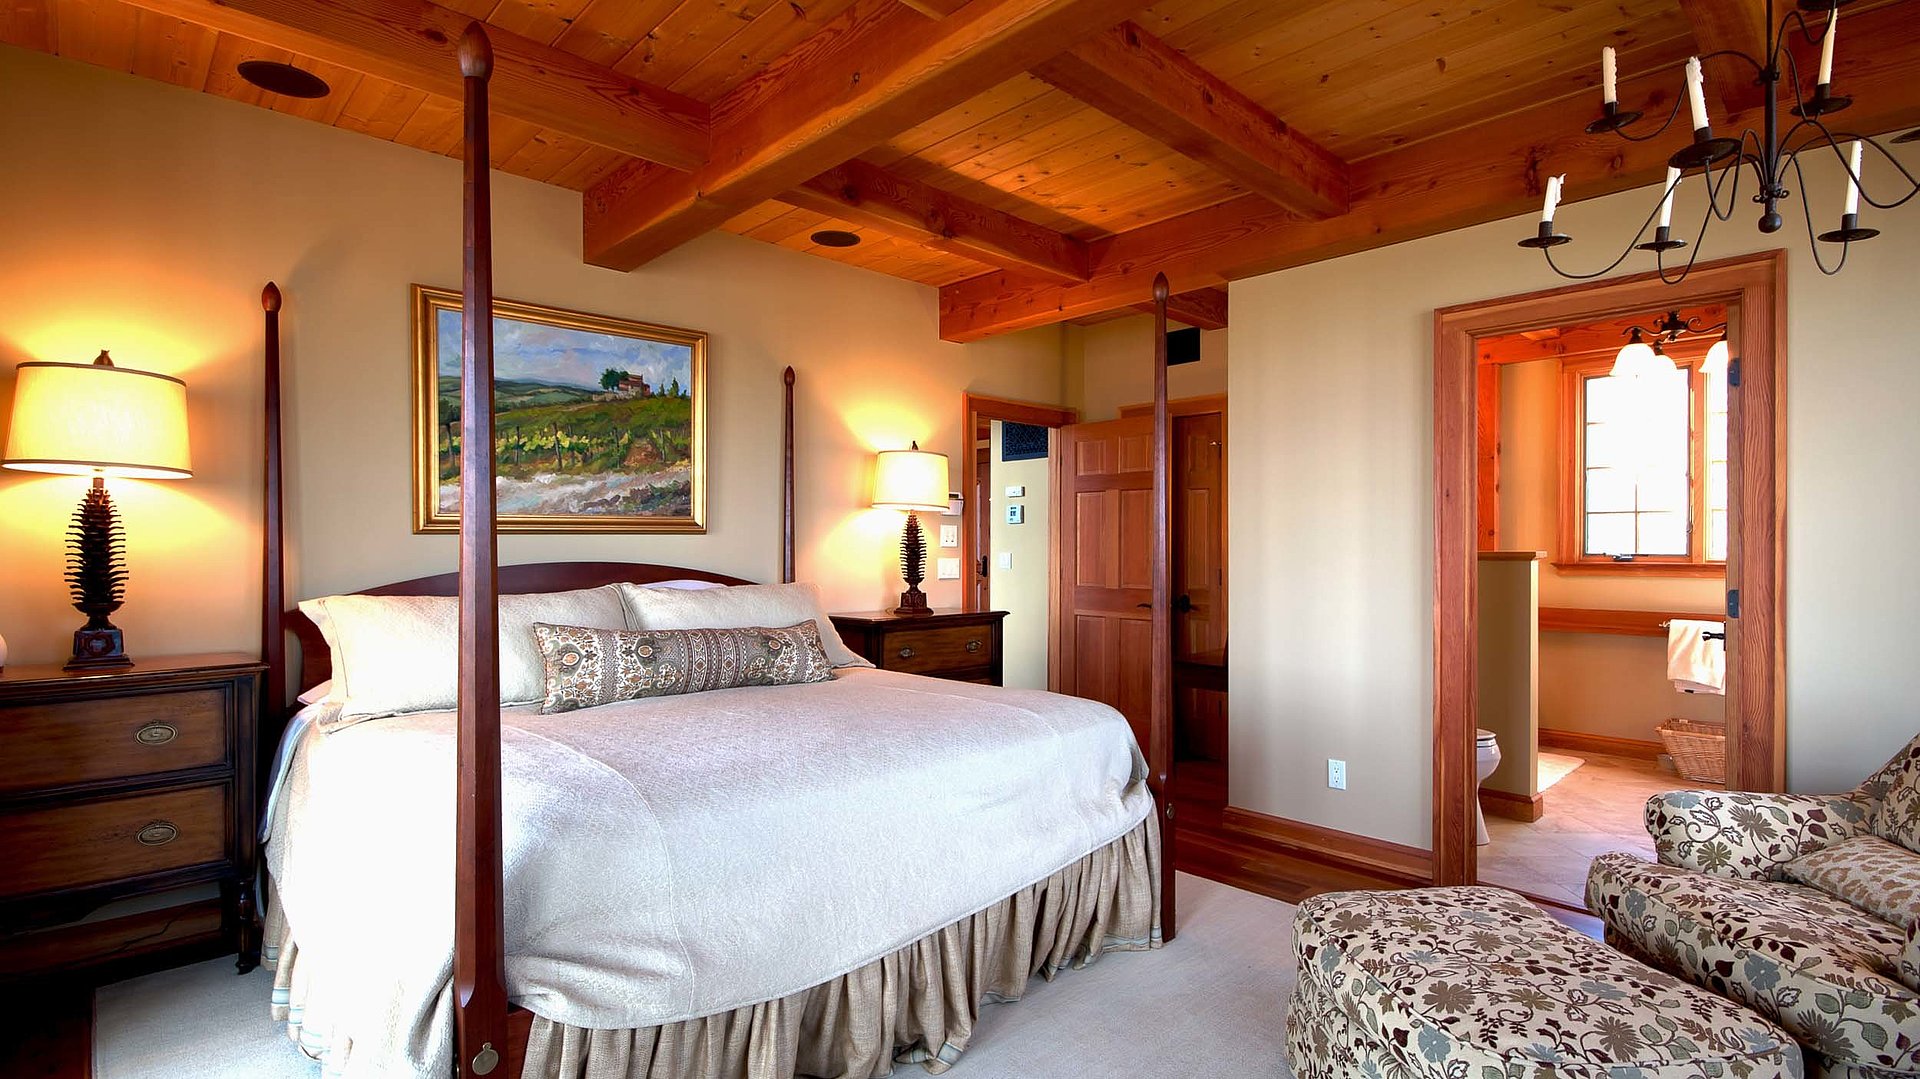 Übernachten im Panorama Oberfranken -  sehr ordentliches Hotelzimmer mit großem Bett, warmer Nachtlampe und Wandgemälde